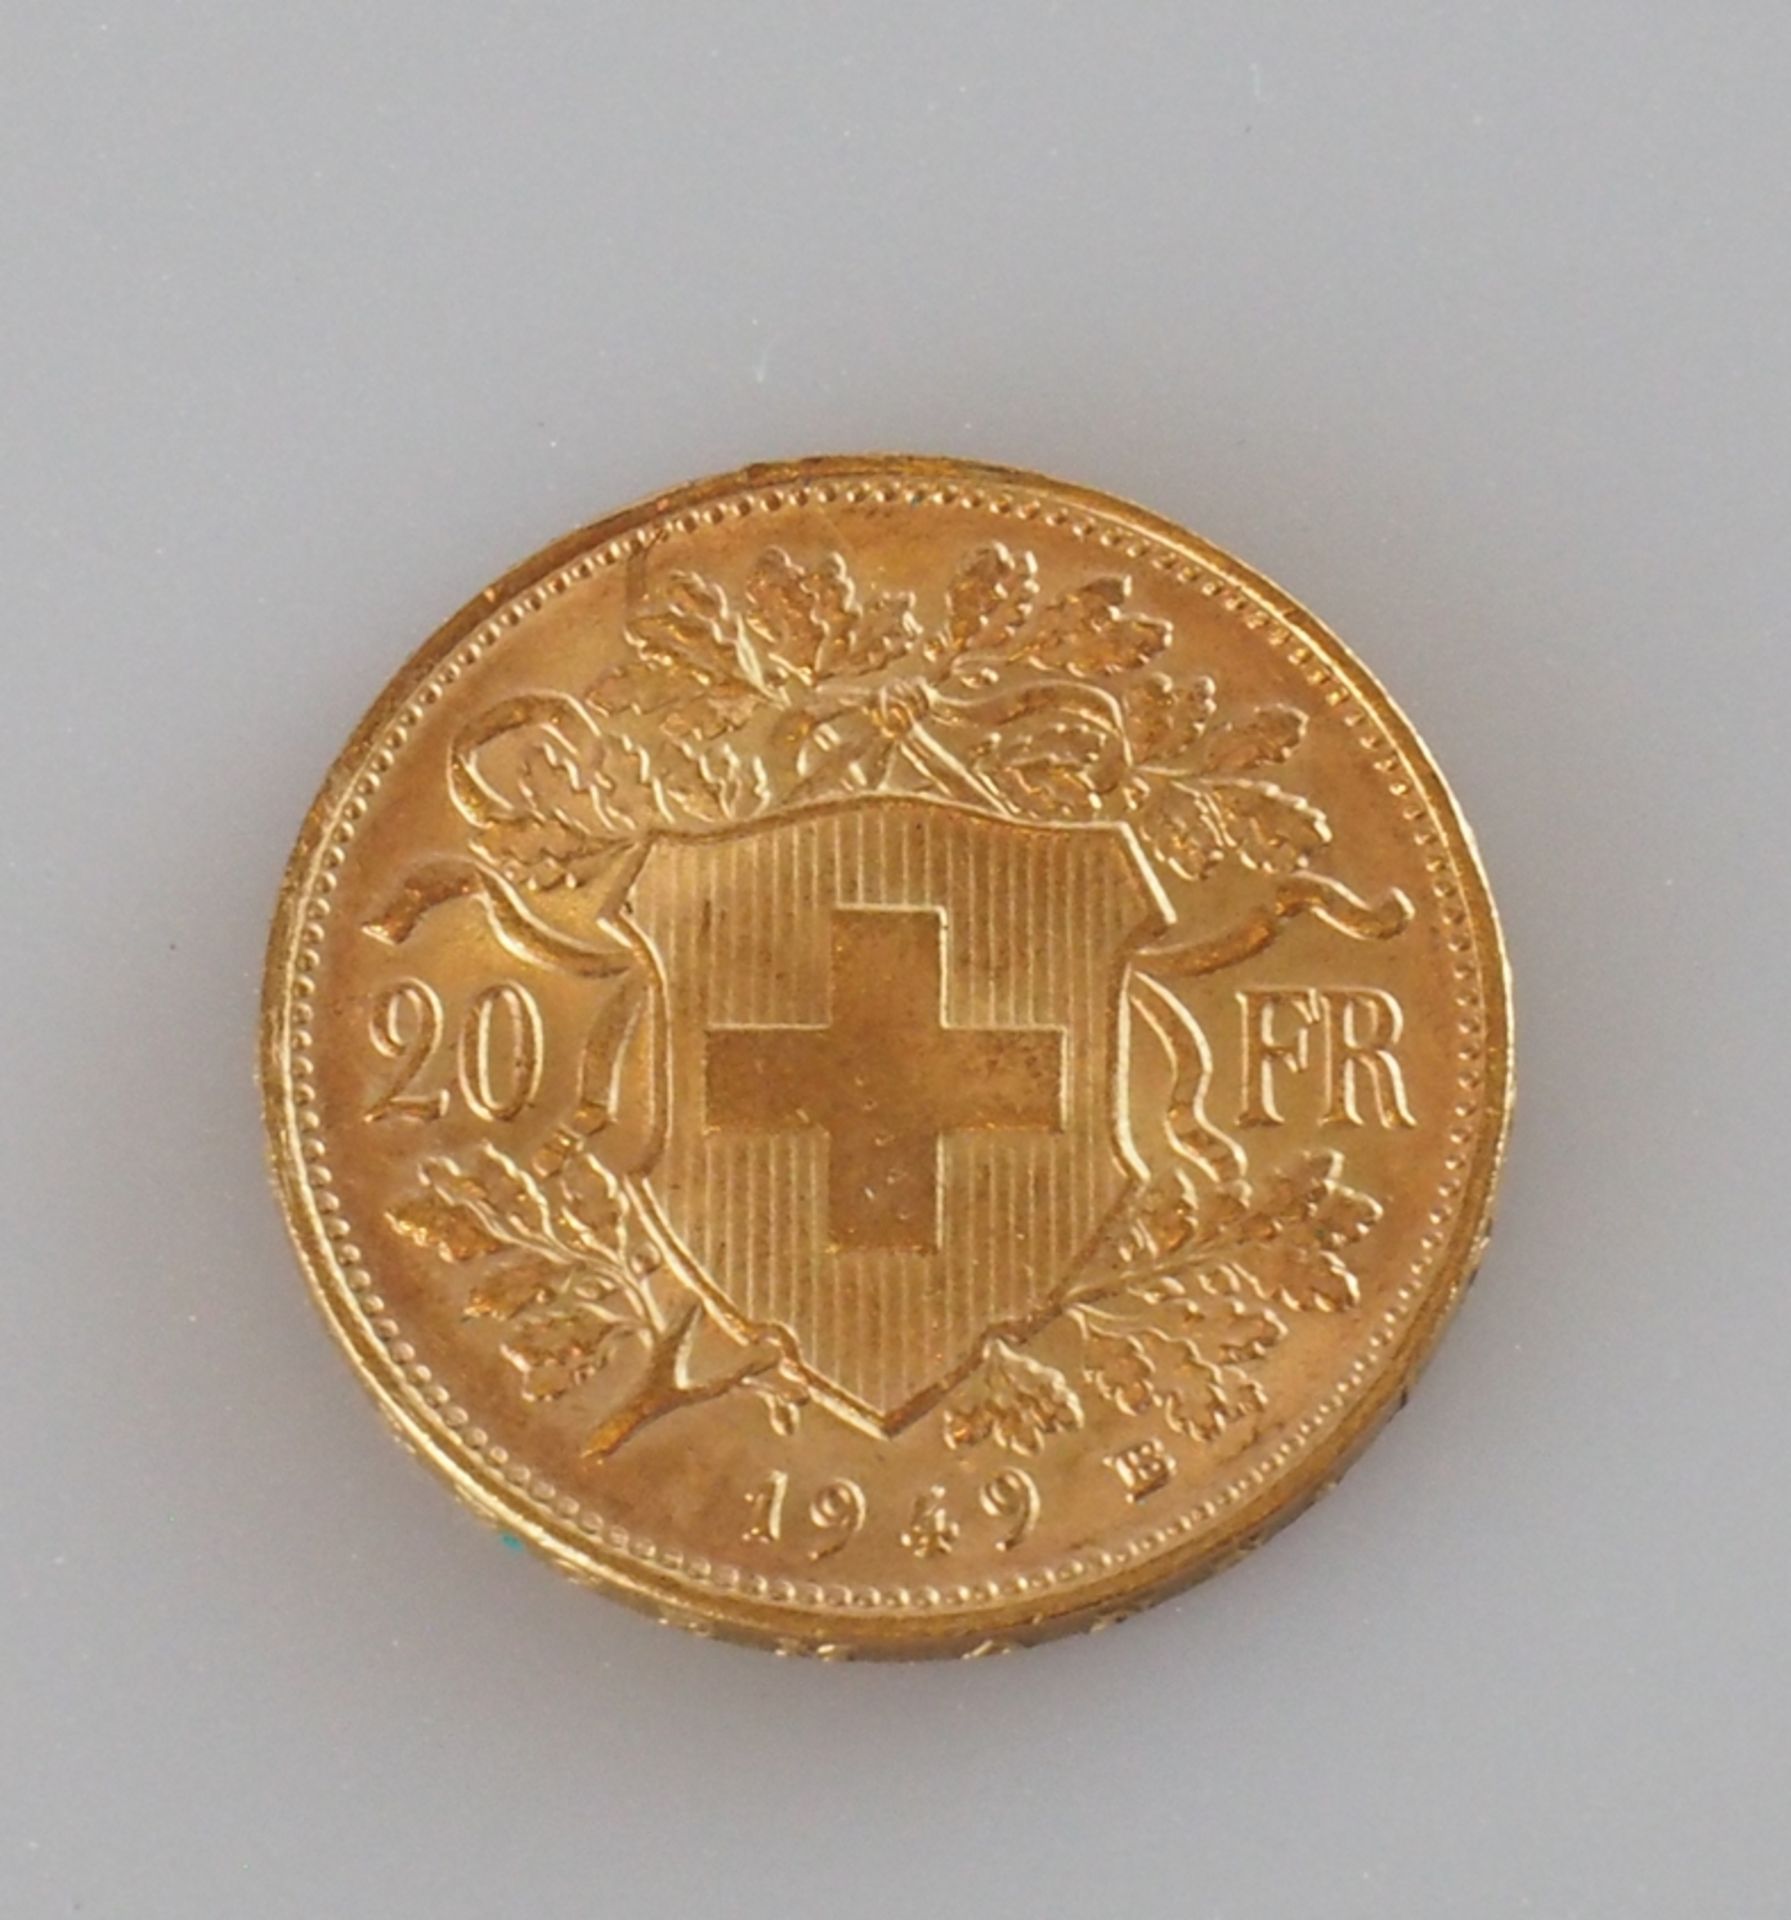 Goldmünze Schweiz. 20 Franken 1949 B - Bild 2 aus 2